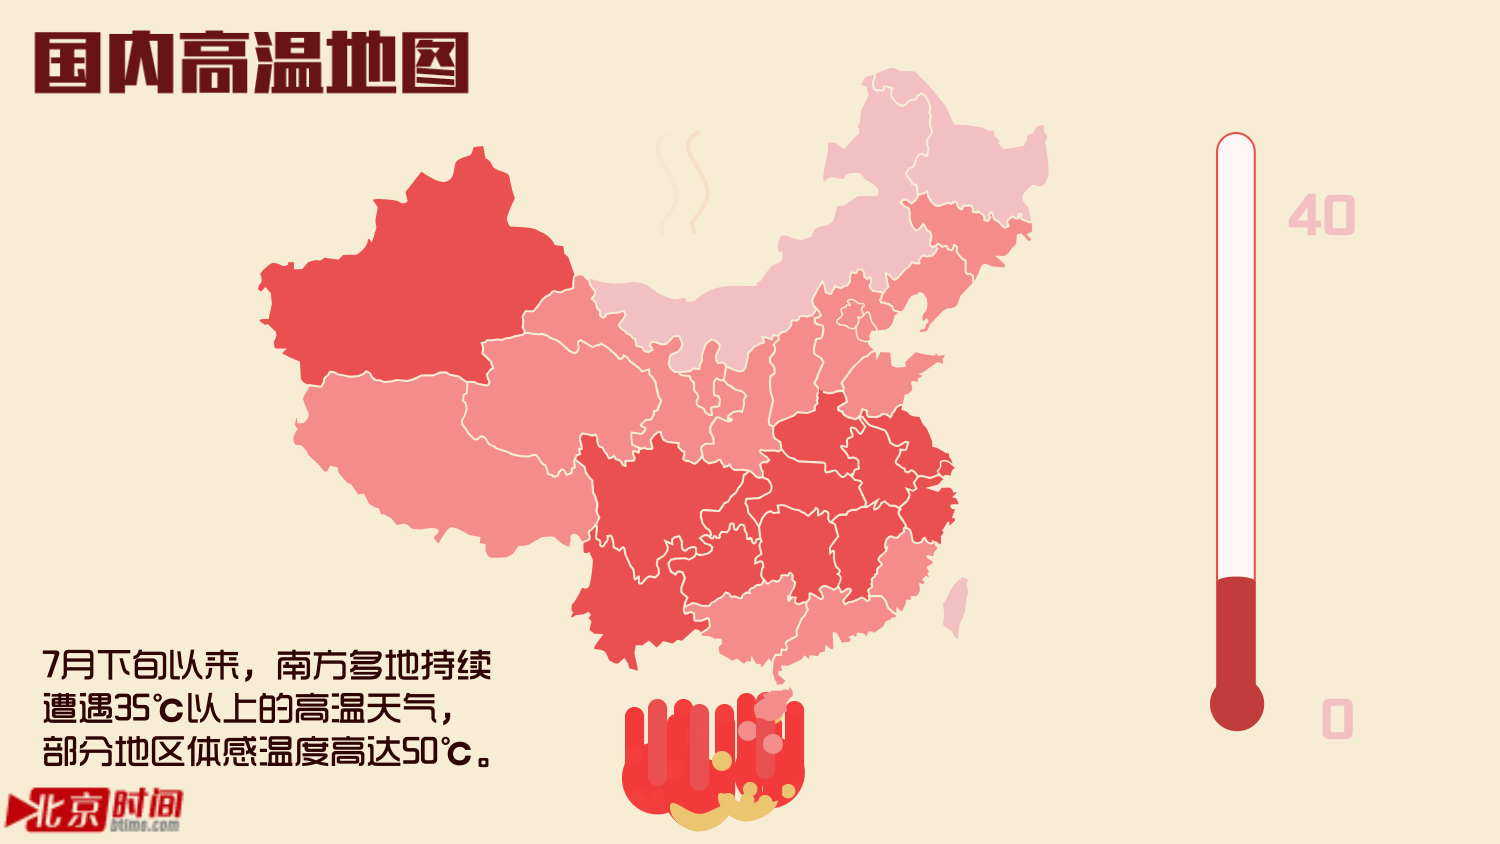 国内 高温 地图 中国地图 持续升温 炎热地区